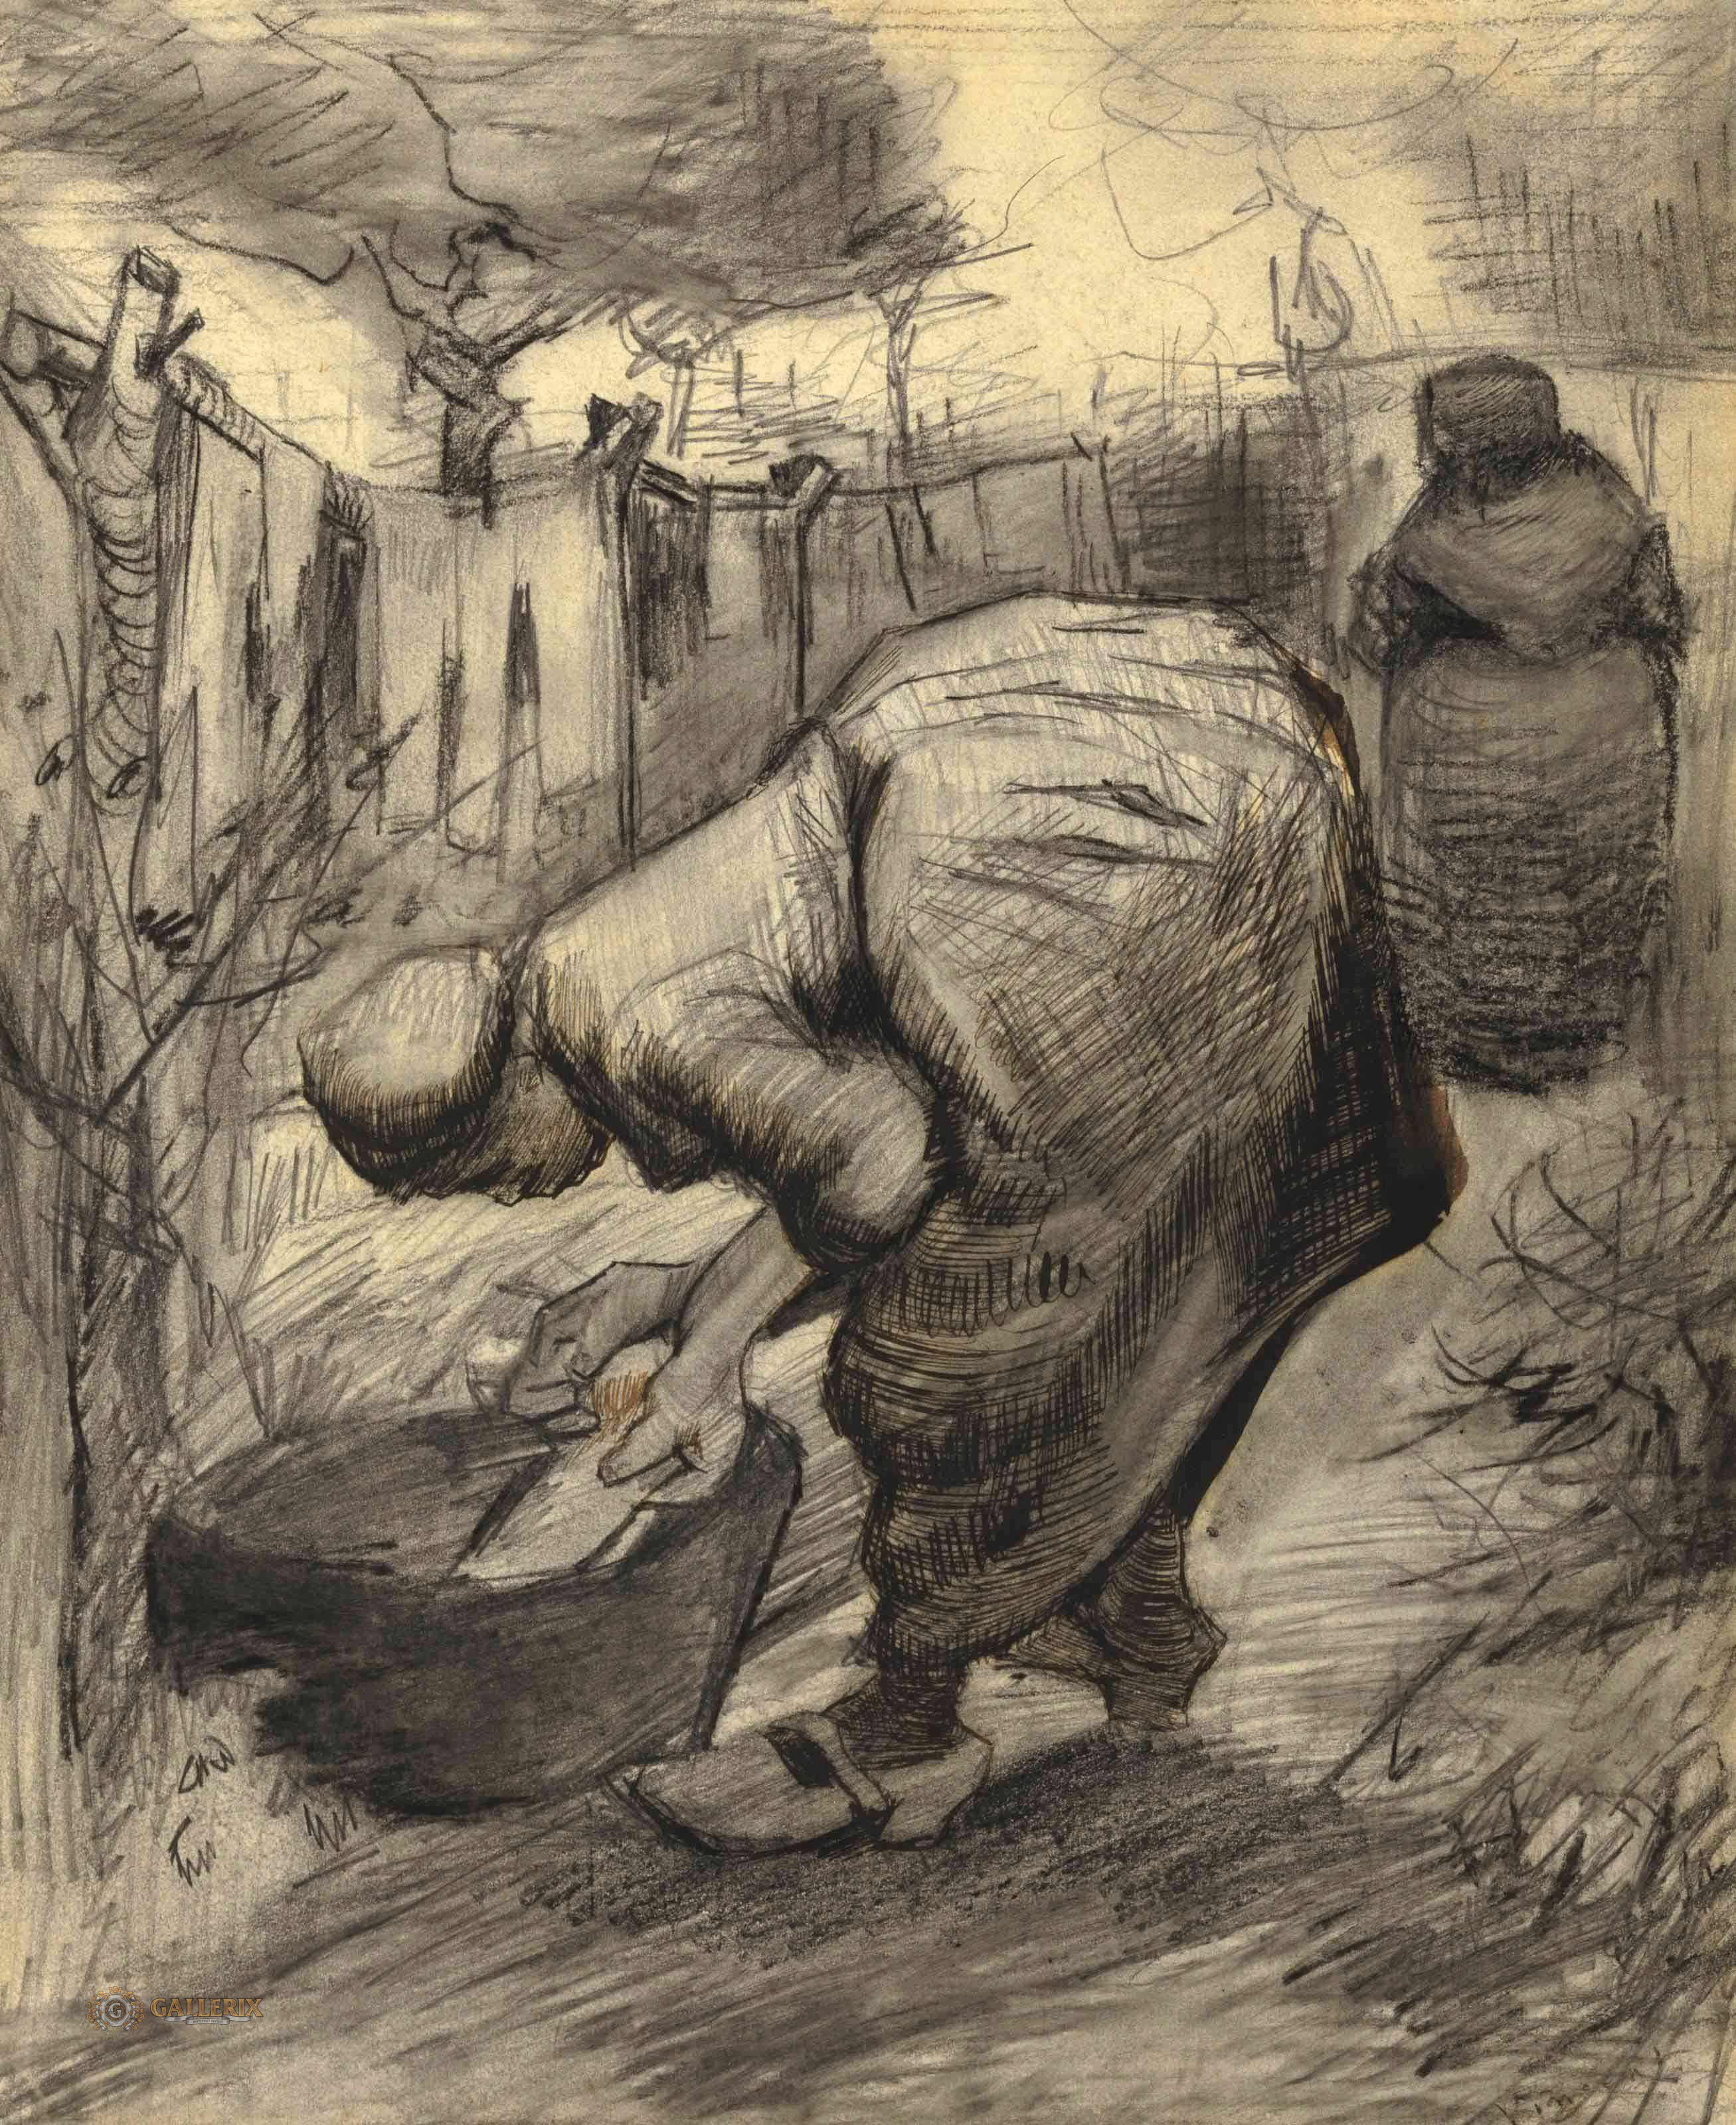 Винсент Ван Гог. "Женщина у лохани для стирки в саду". 1885. Частная коллекция.